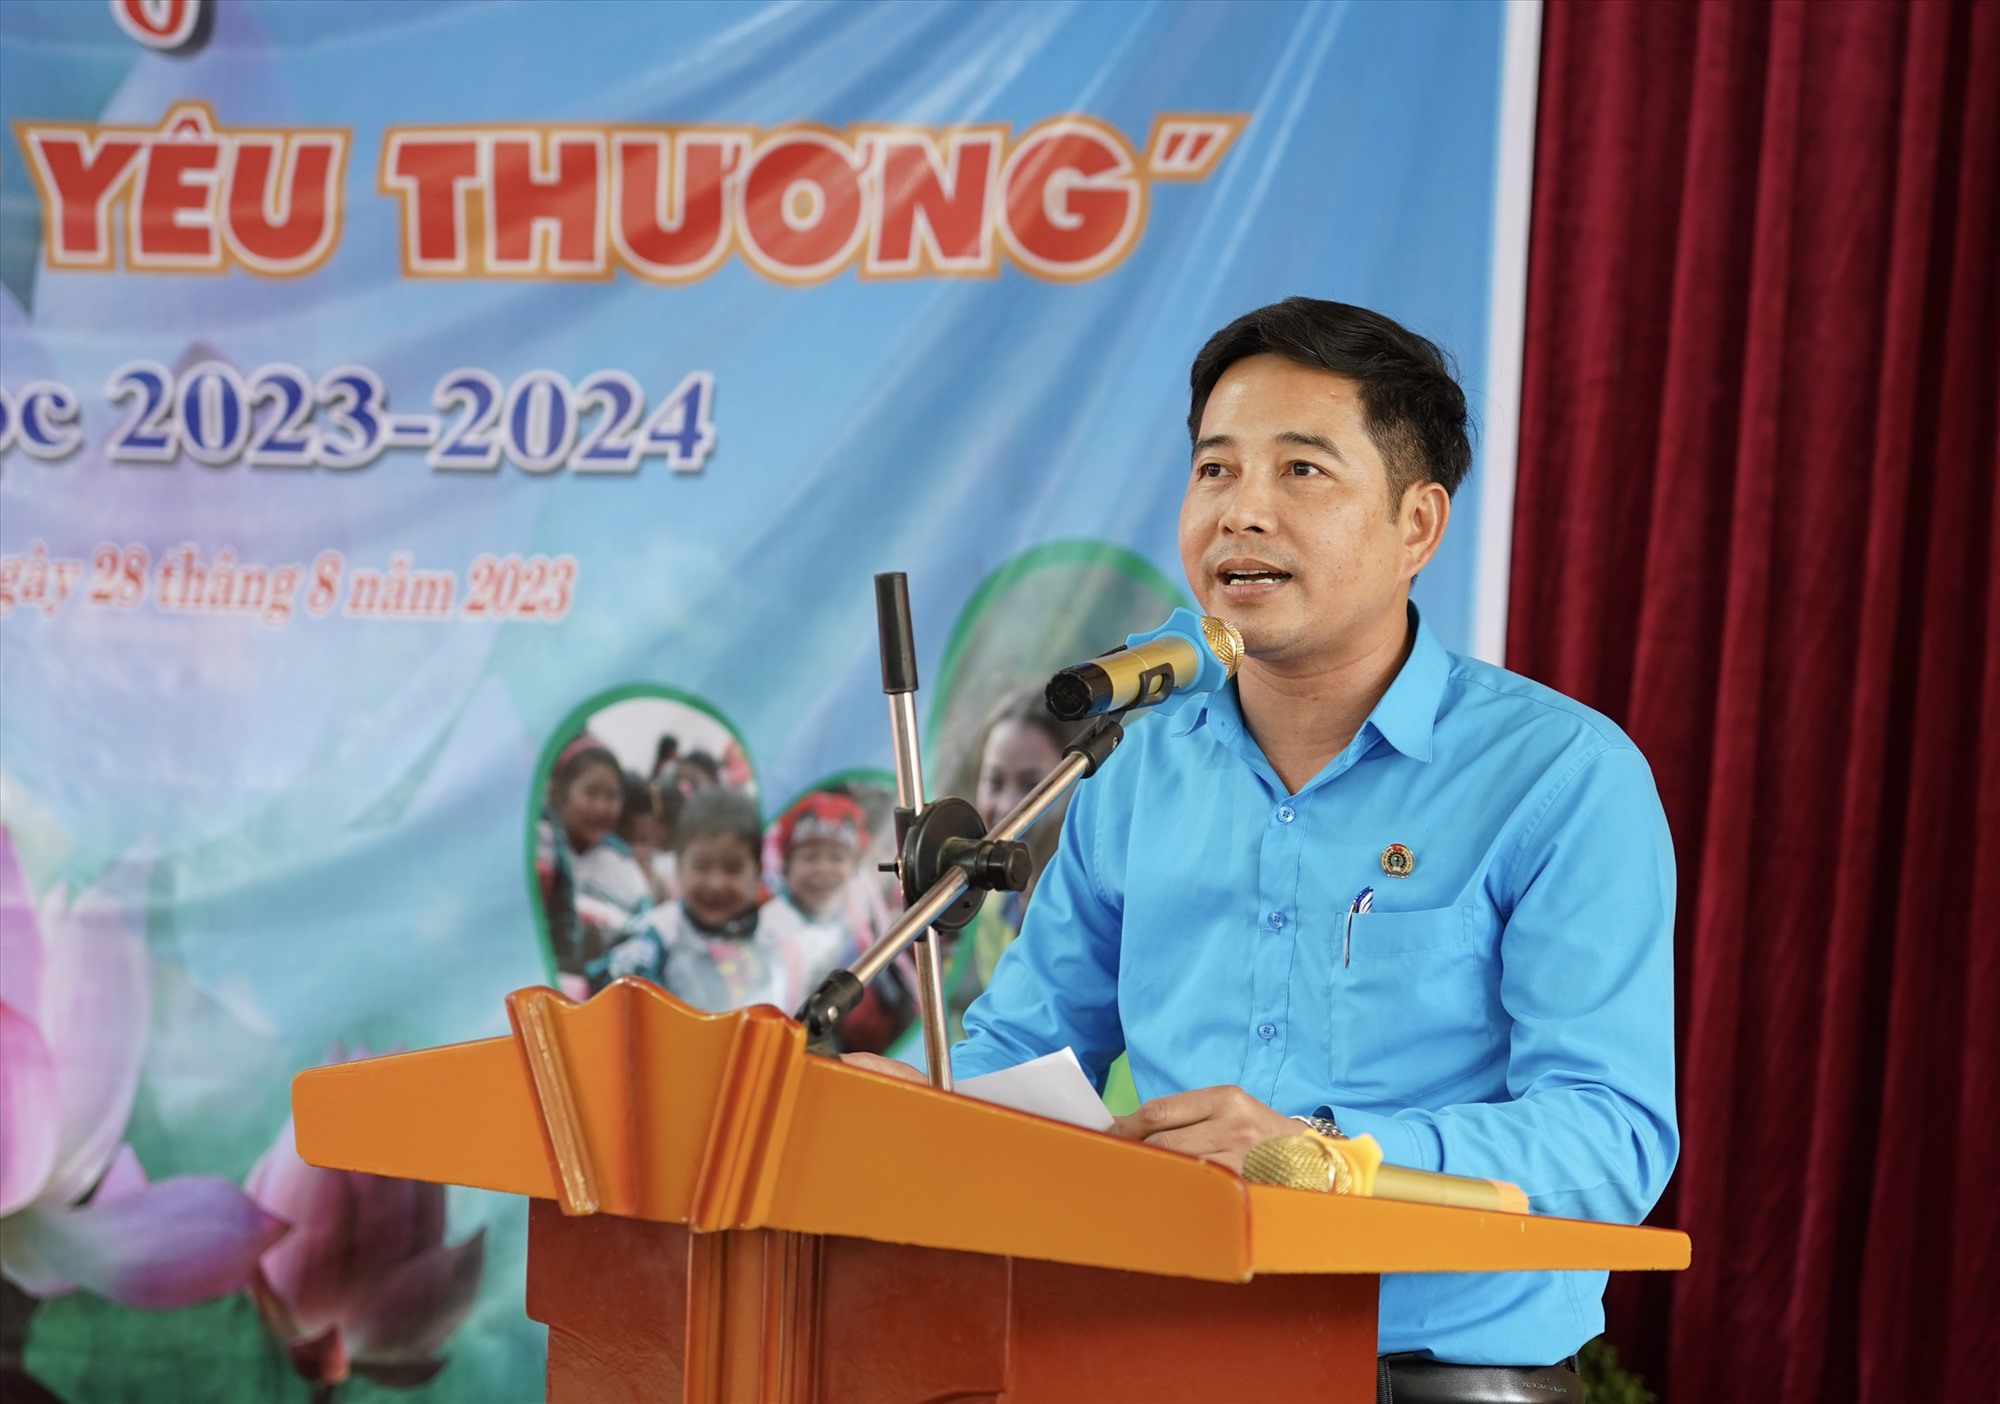 Ông Đặng Văn Hải – Chủ tịch Công đoàn ngành giáo dục phát biểu tại chương trình. Ảnh: Quỳnh Trang